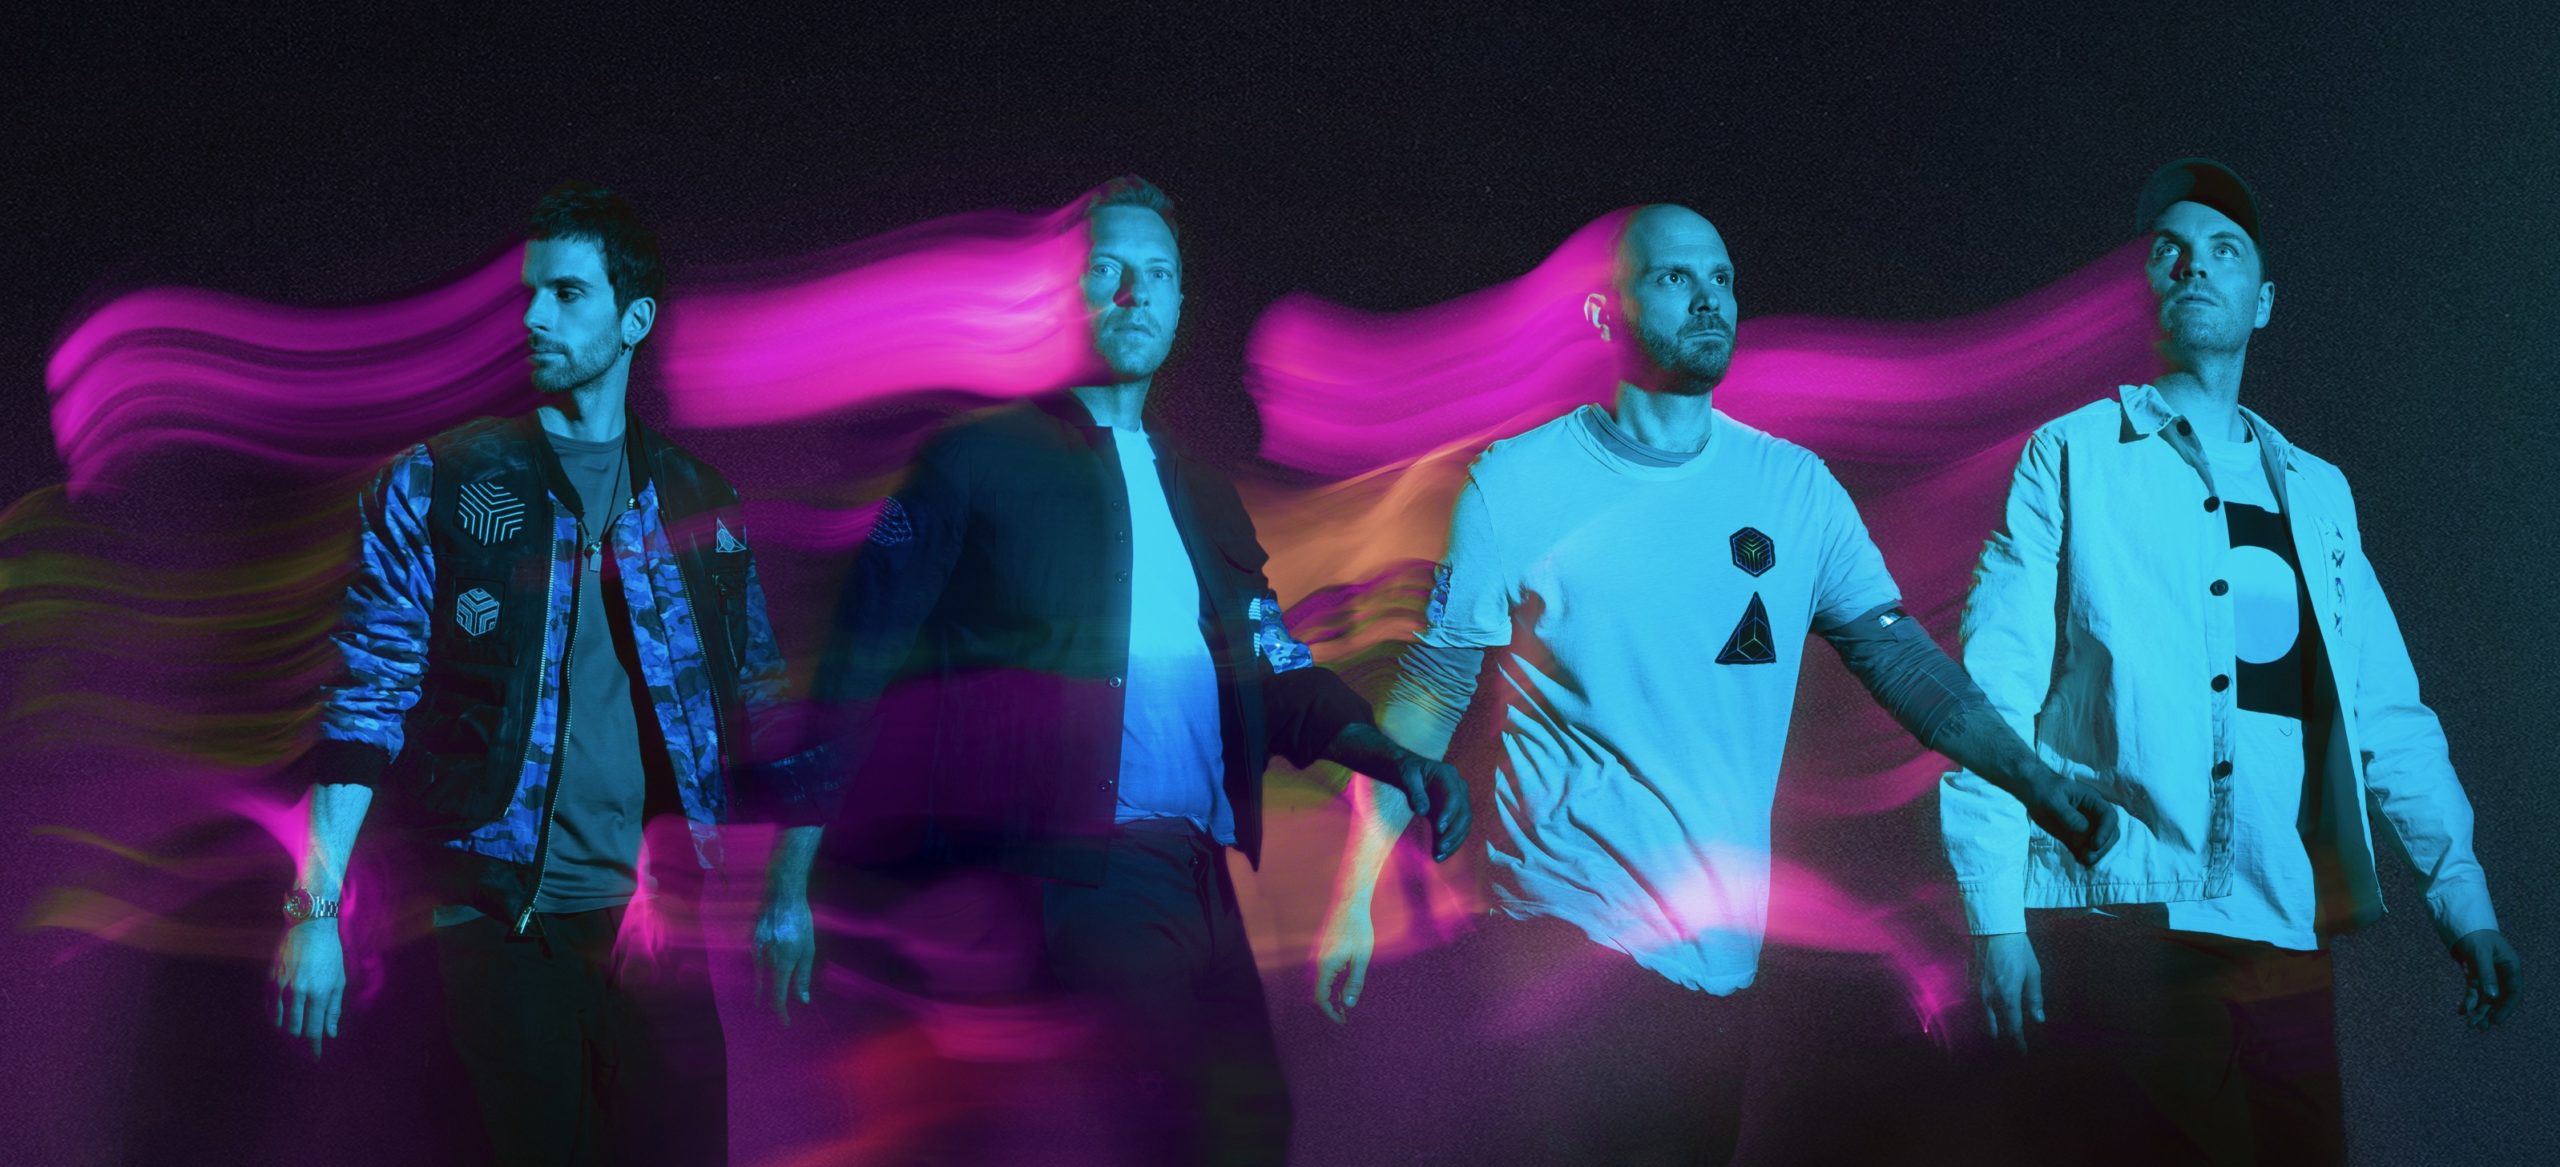 Avec Higher Power, Coldplay s’offre l’espace et décolle vers de nouveaux horizons